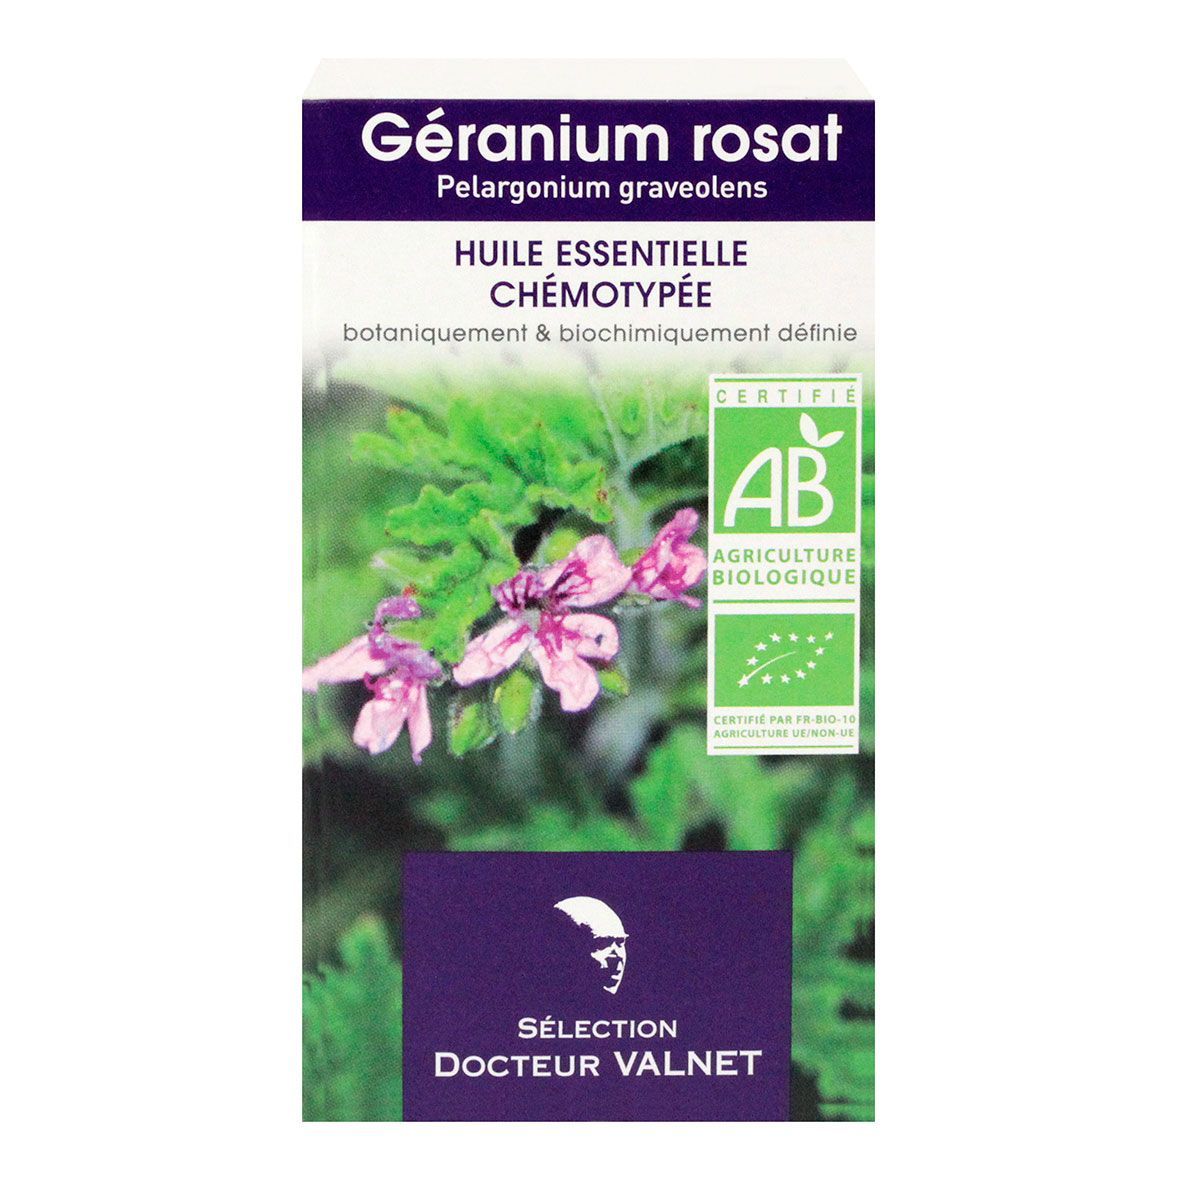 l'huile essentielle de géranium rosat bio docteur valnet est